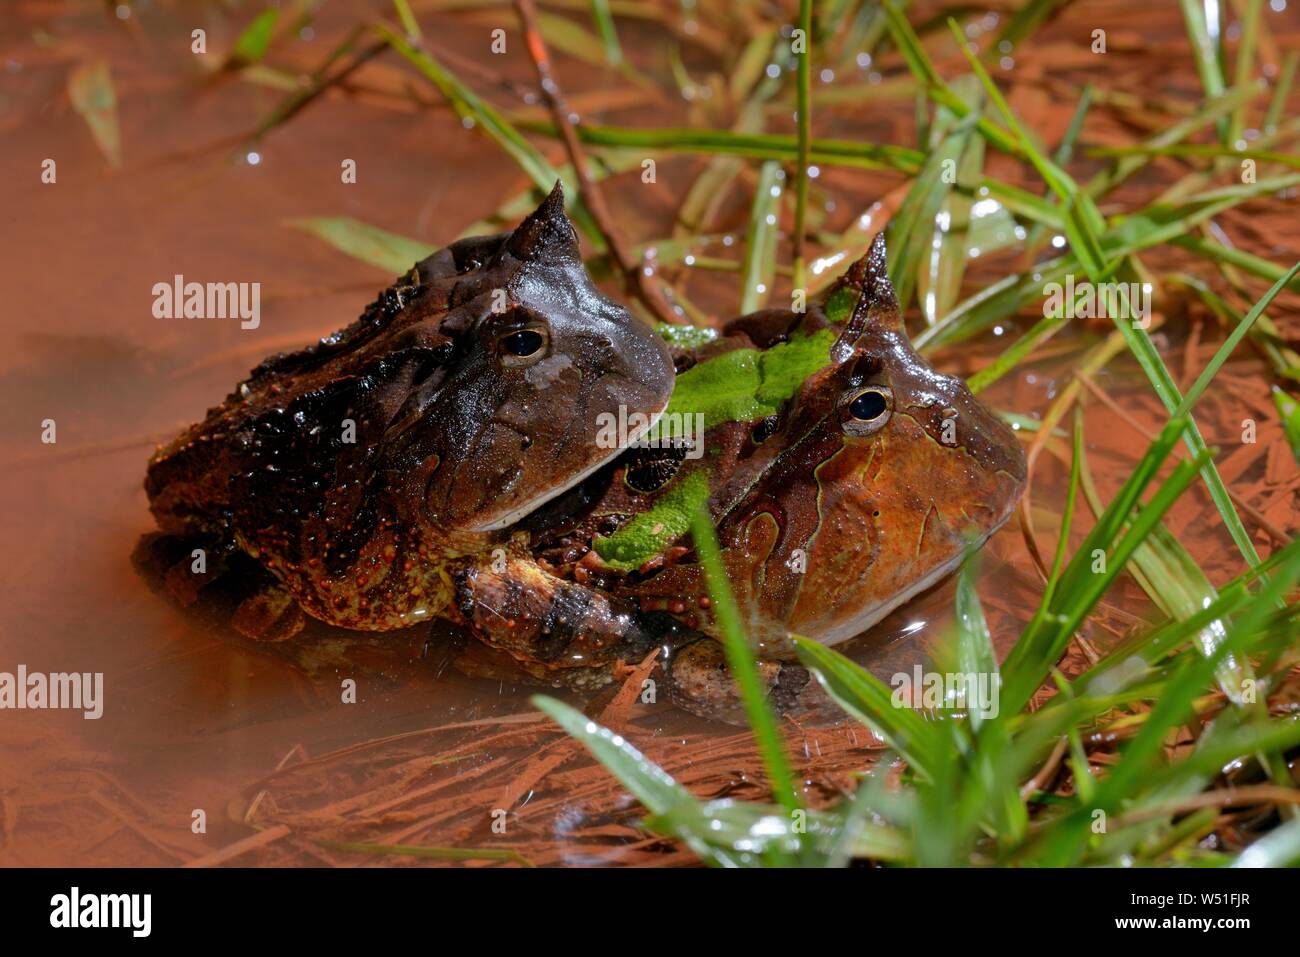 Amazzonico rane cornuta (Ceratophrys cornuta), coppia coniugata in acqua, Guiana francese Foto Stock